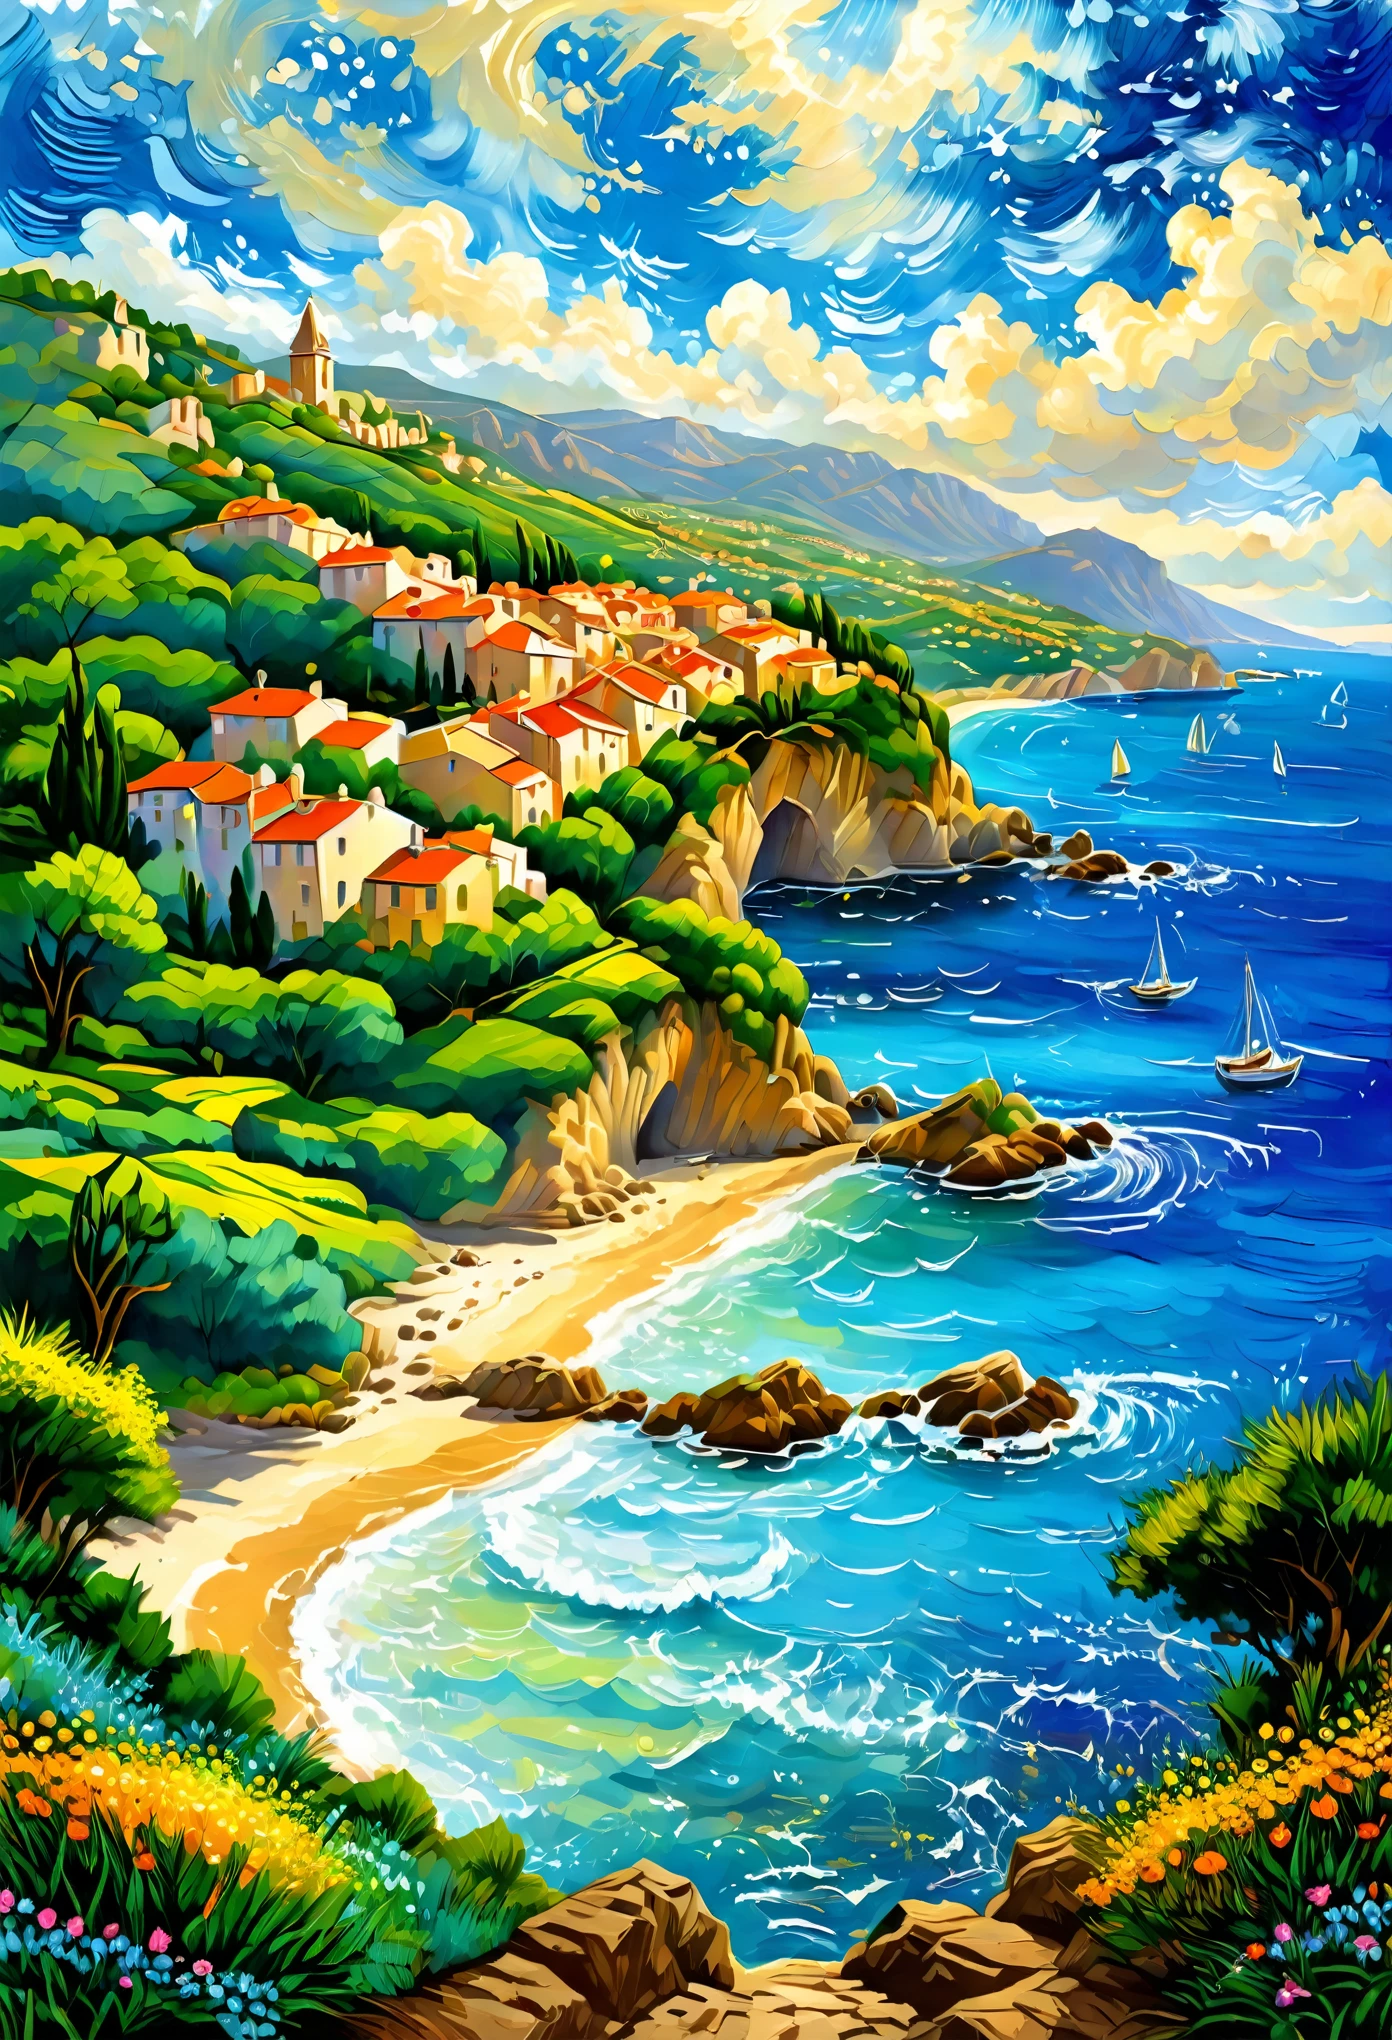 프렌치 리비에라, 프랑스 해안 풍경, 이 아름다운 관광 풍경을 대표하는 그림을 그려보세요, 마법 같은, Manuel Fernández García 스타일의 현대 미술 전문 화가가 그린, 걸작, 그 아름다움으로 상을 받은 그림, 선명하고 조화로운 색상, 잘 표시된 브러시 스트로크, 32K